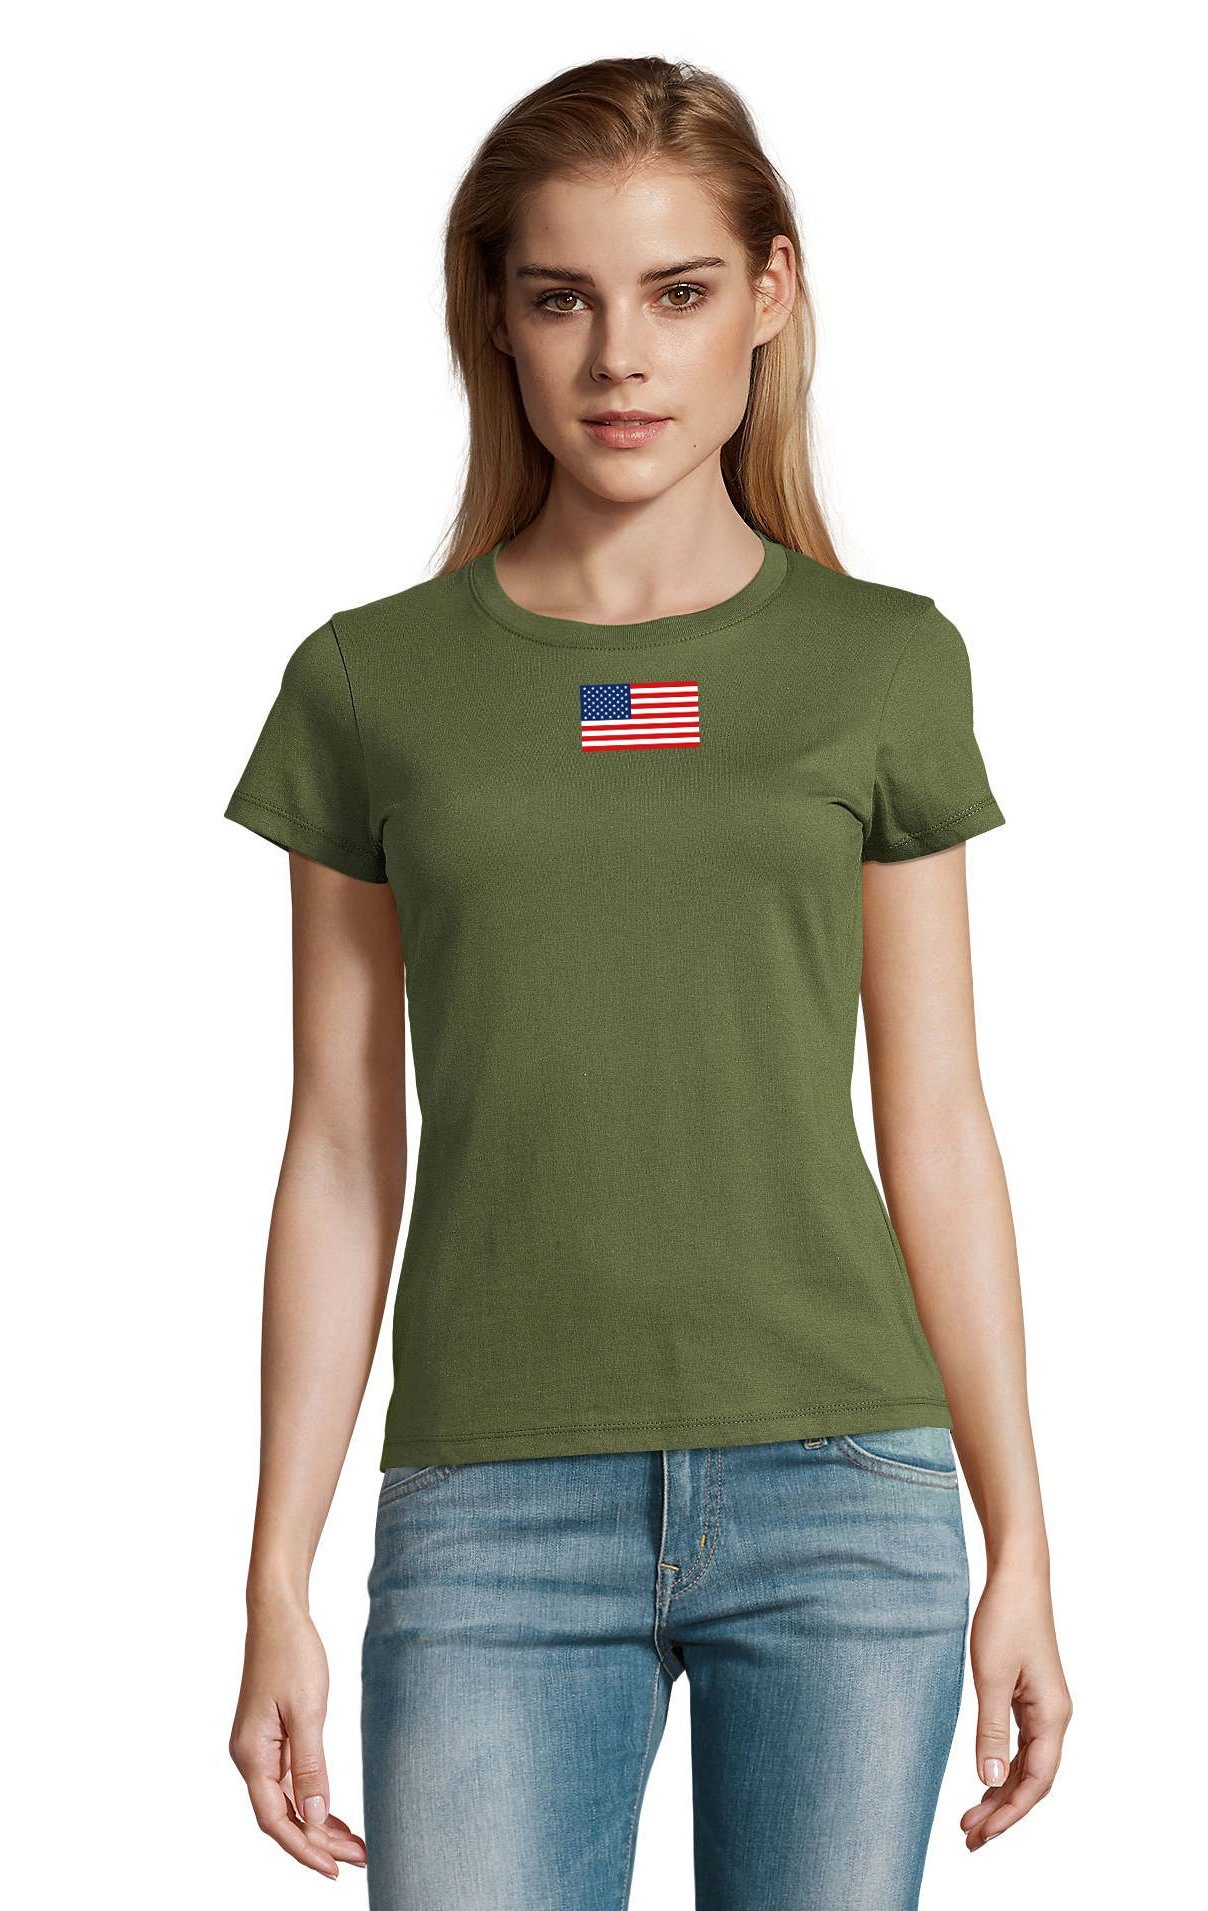 Blondie & Brownie T-Shirt Damen Nartion USA Vereinigte Staaten von Amerika  Army Peace Air Force